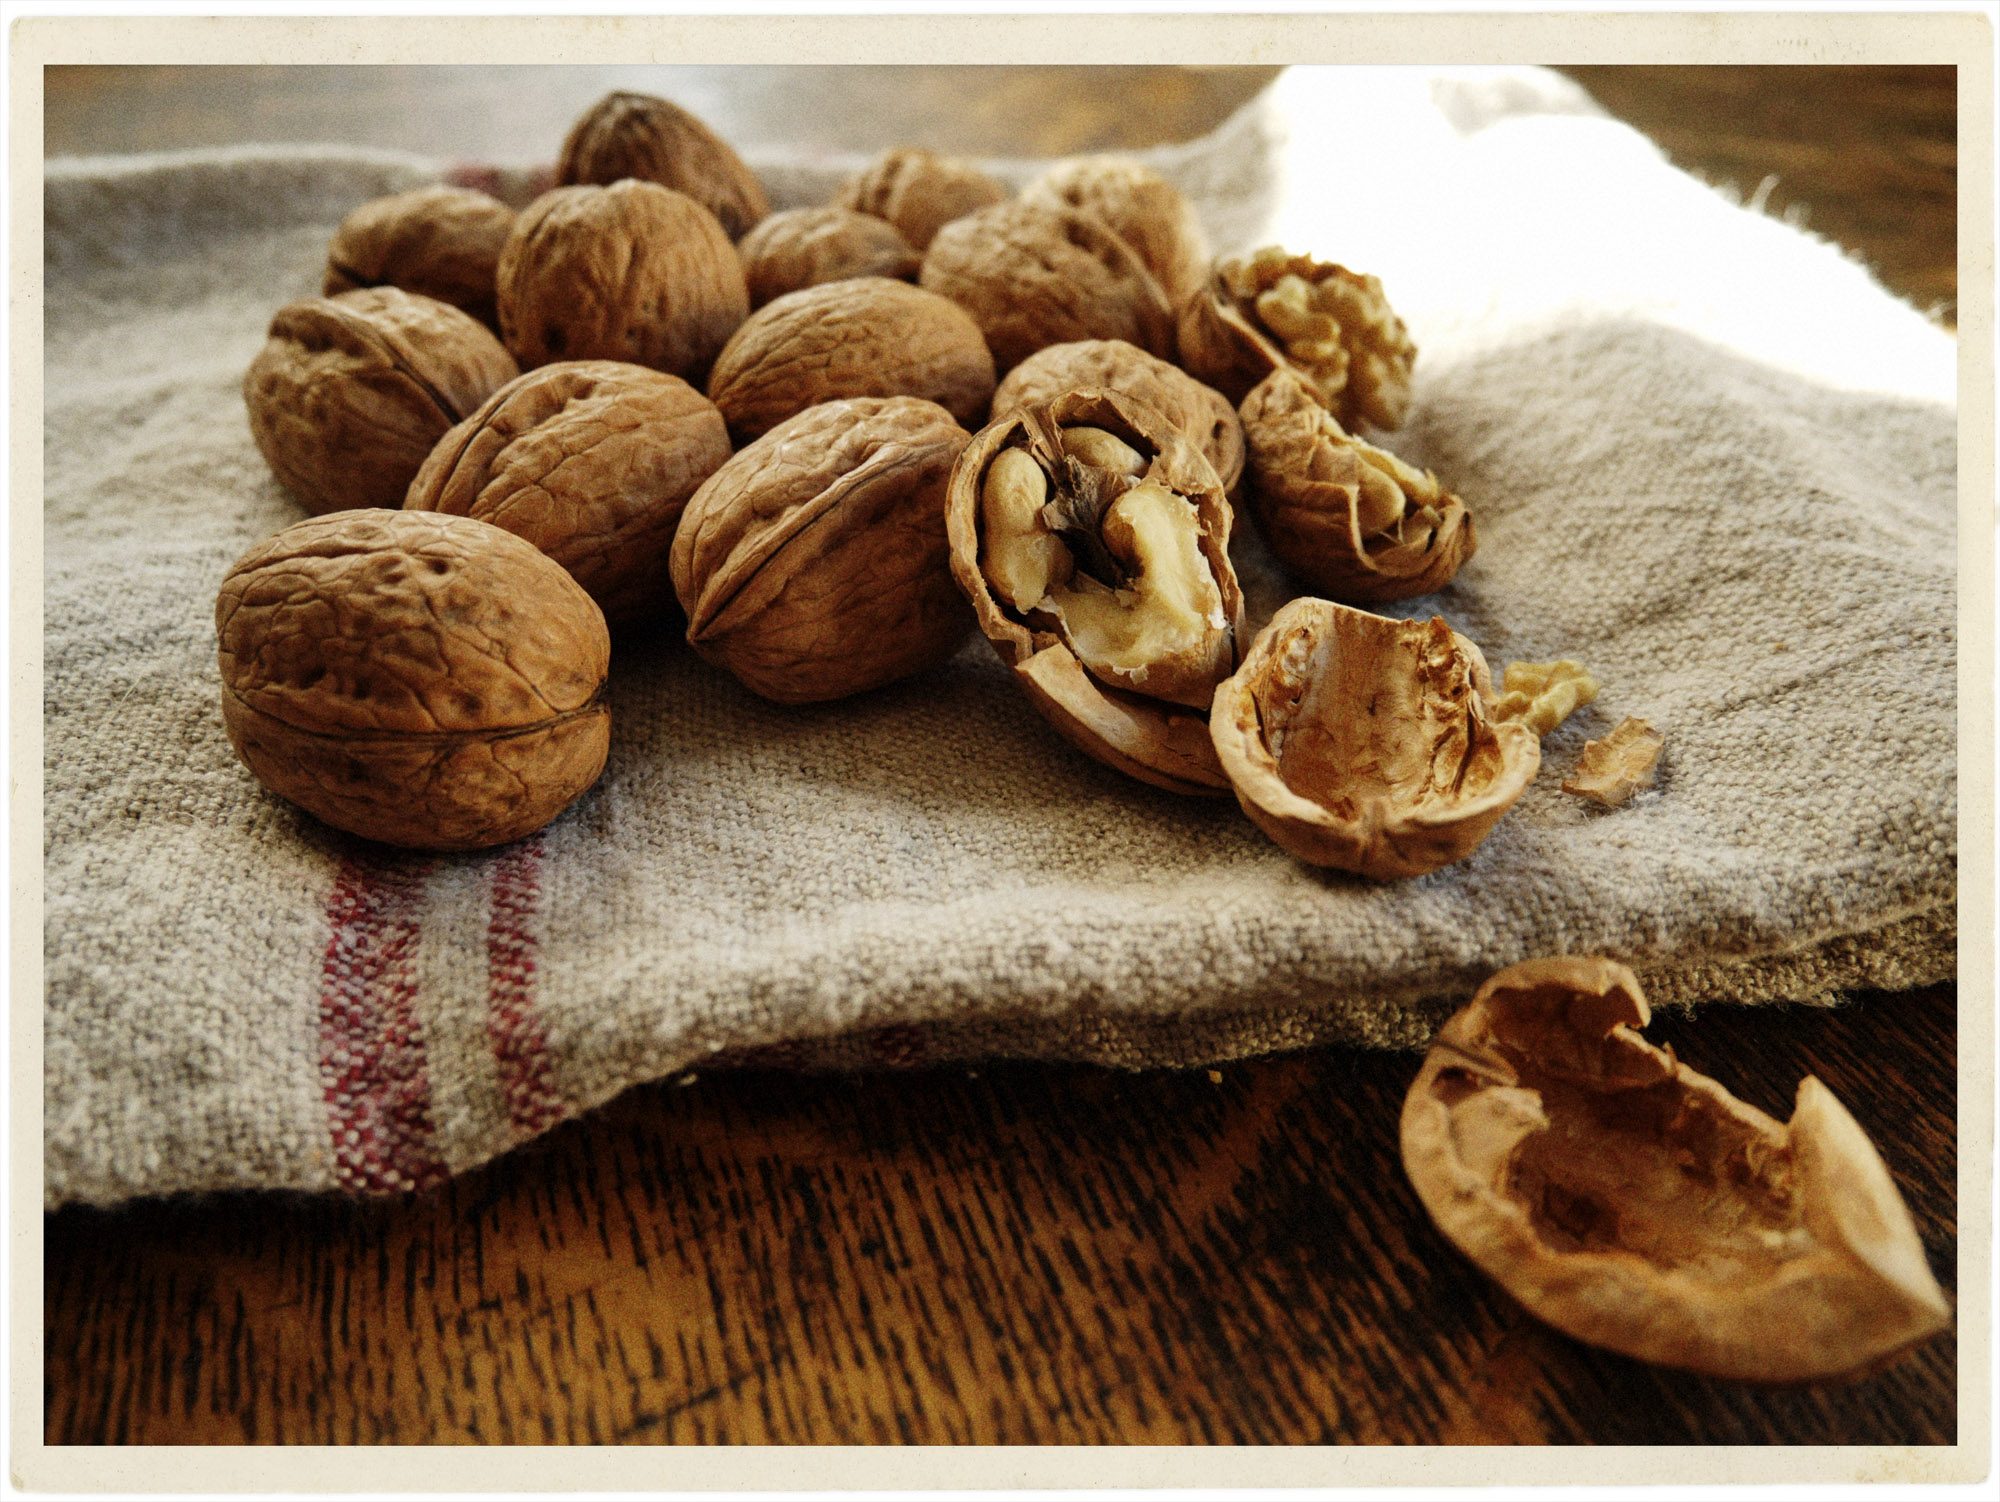 Gorgeous Savoie walnuts